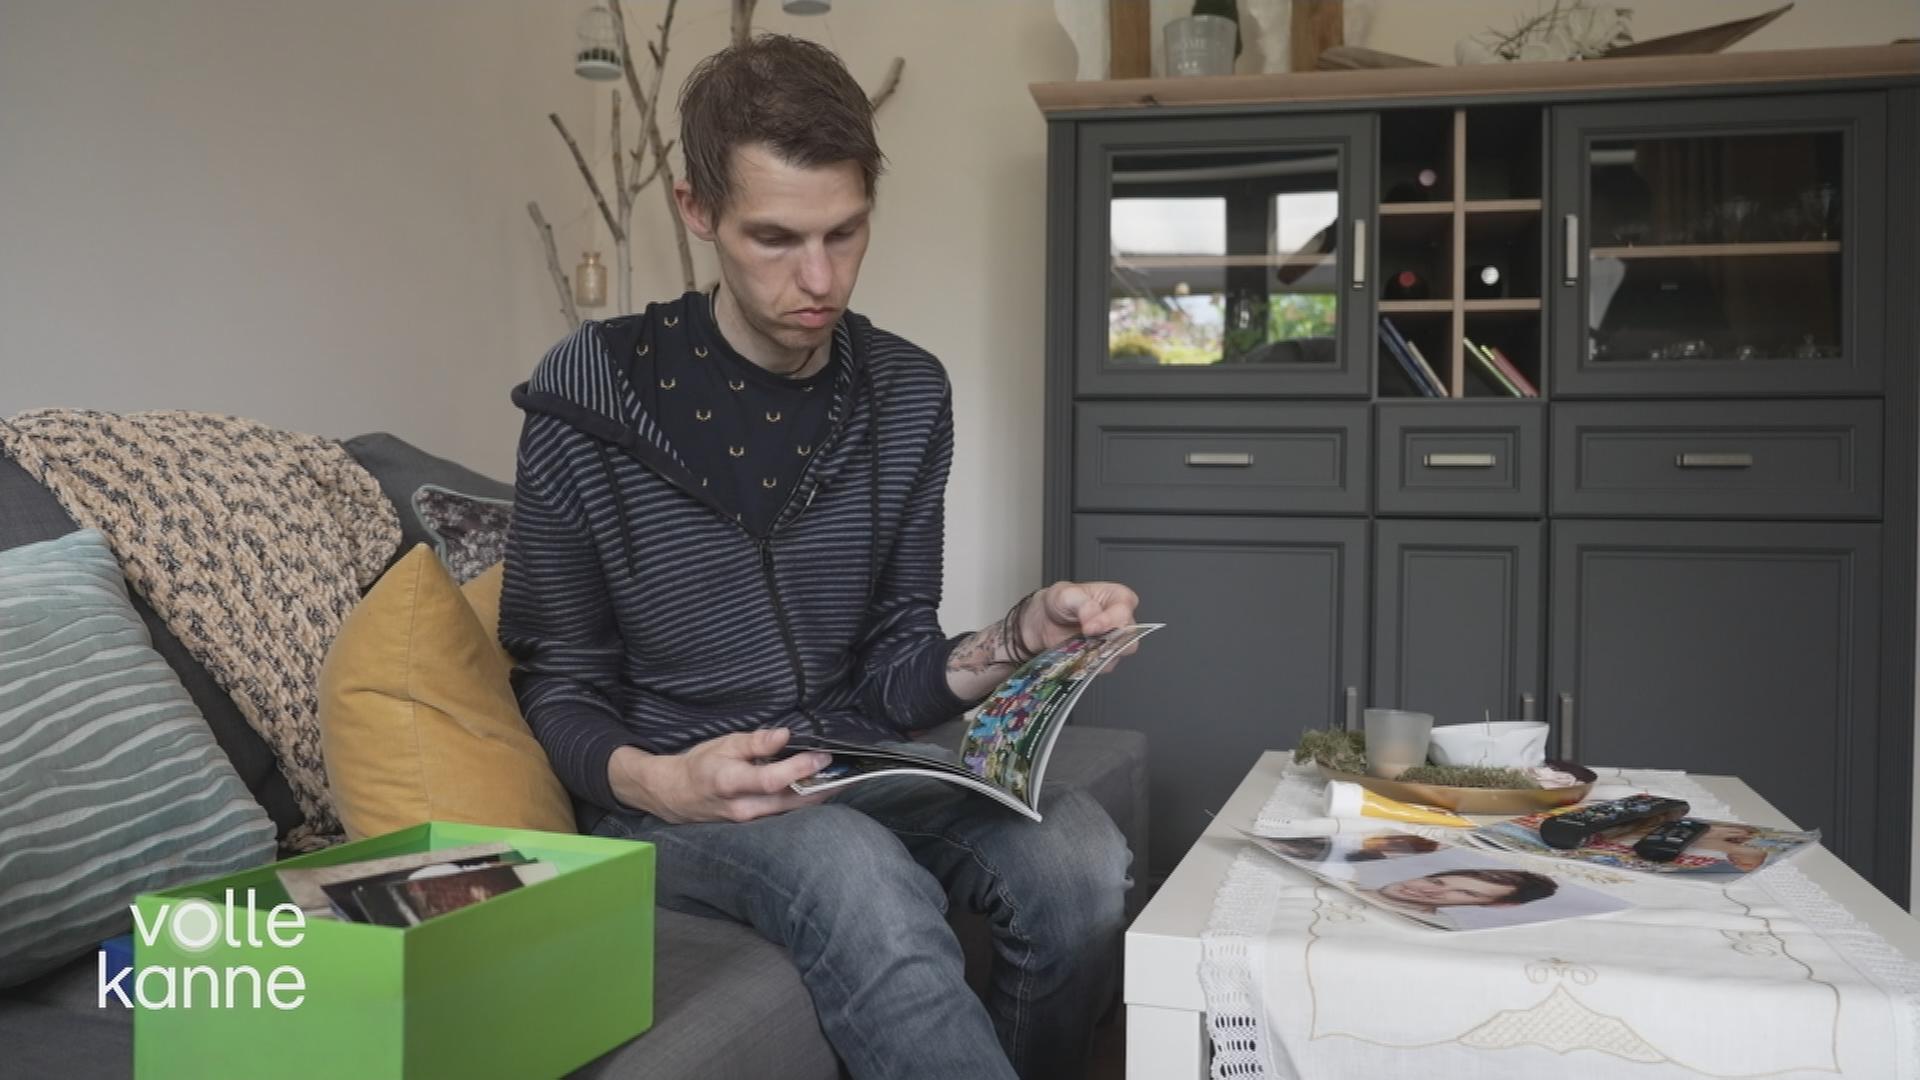 Ein Mann sitzt auf einem Bett und blättert in einer Zeitschrift